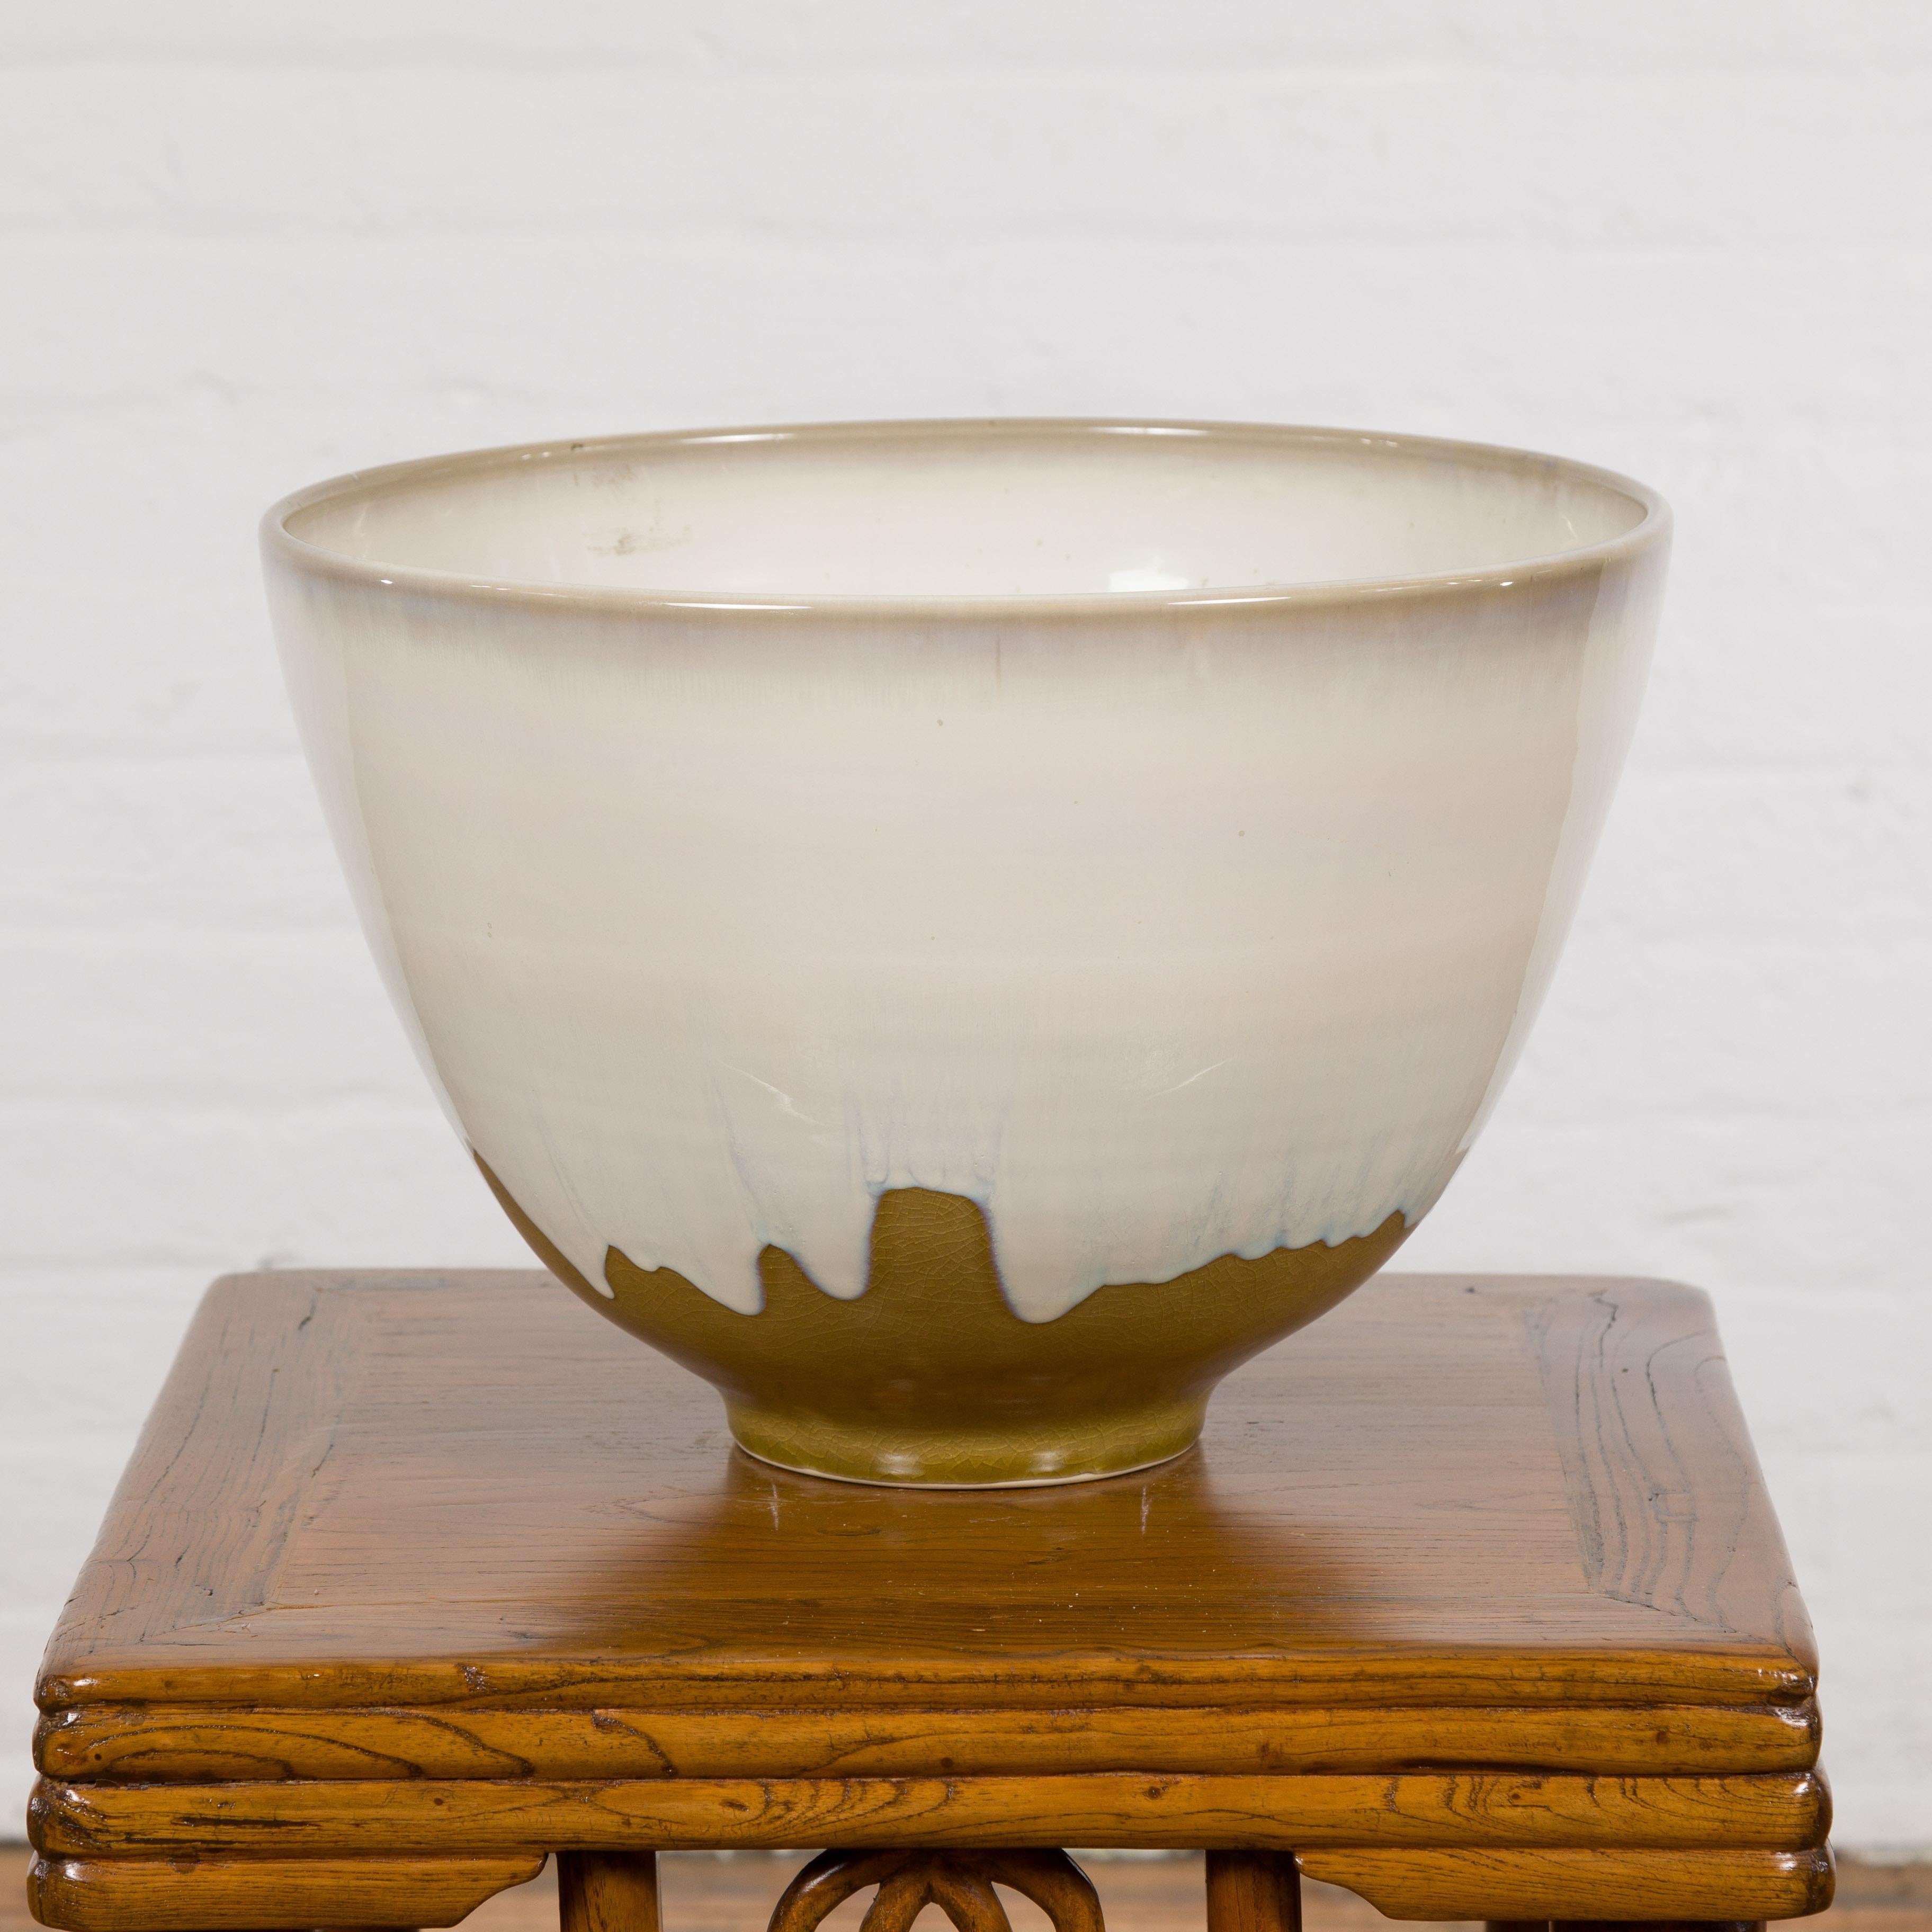 Eine weiß-braun glasierte Keramikschale der Prem Collection Contemporary aus dem 21. Dieser keramische Übertopf des 21. Jahrhunderts aus der Prem Collection, der Eleganz und moderne Raffinesse ausstrahlt, ist ein kunsthandwerklicher Schatz, der die